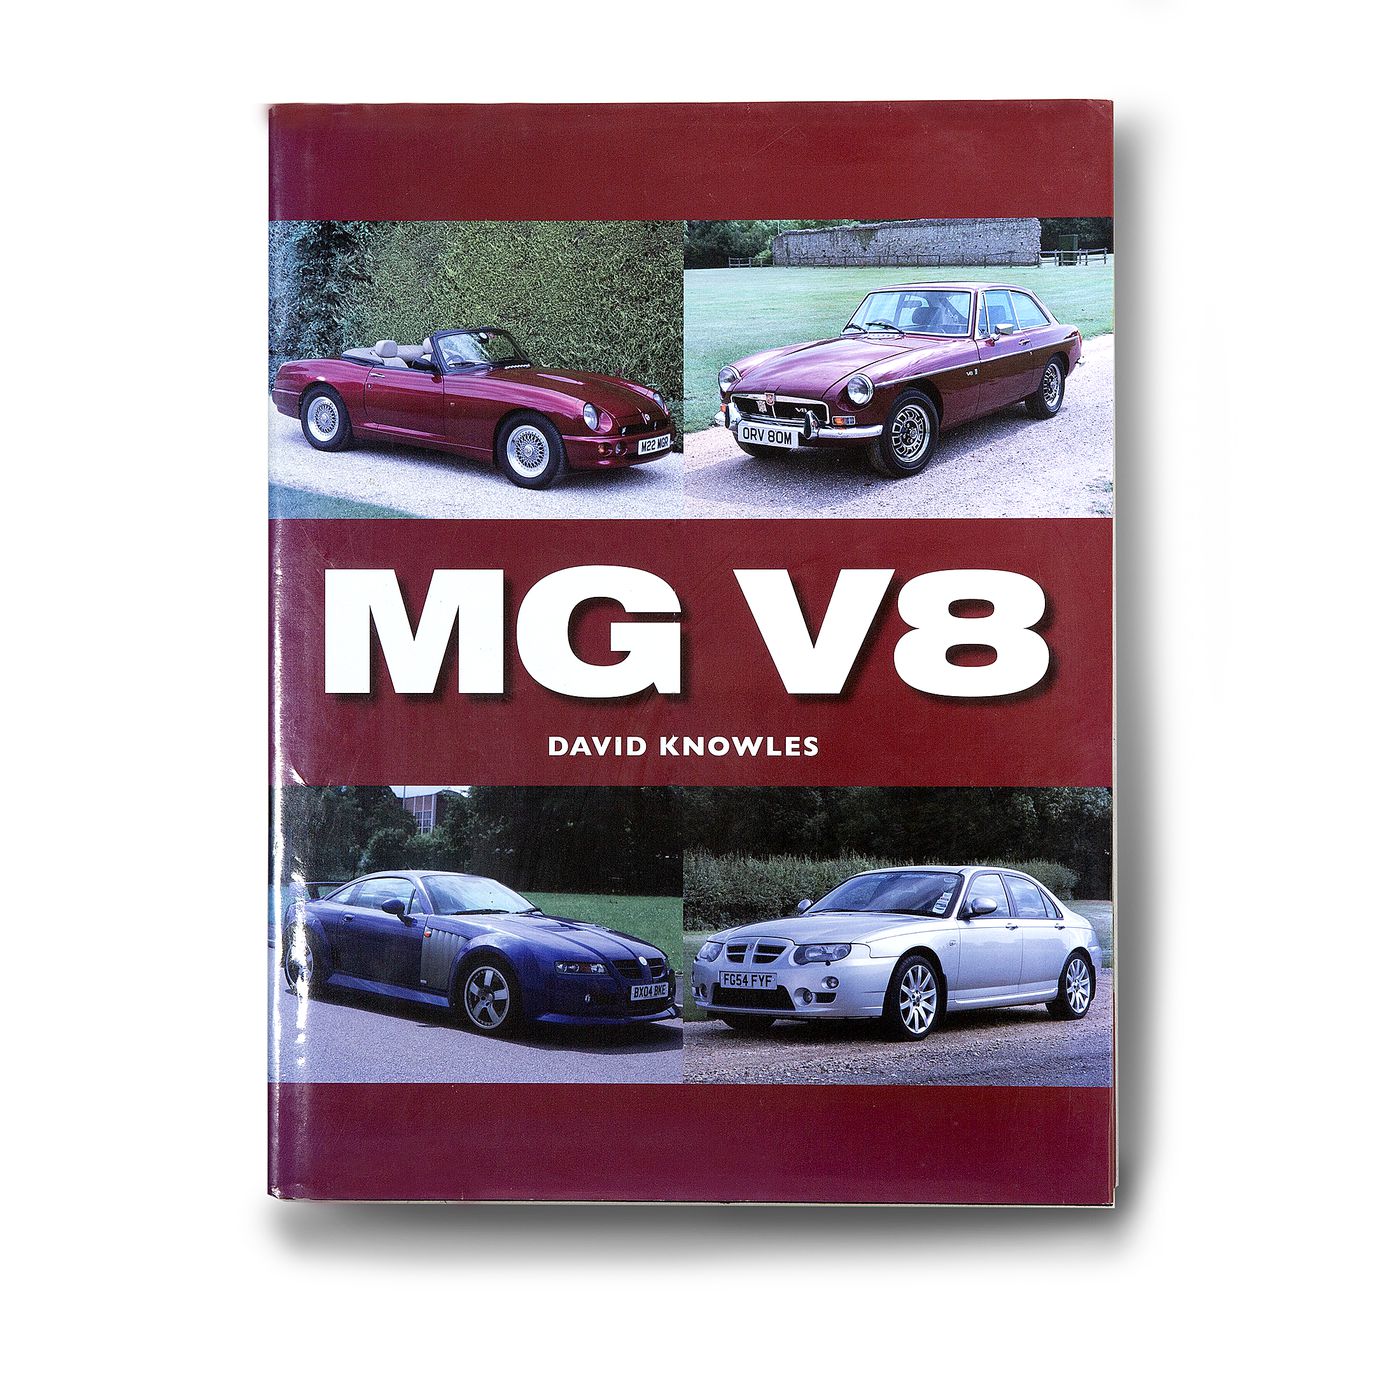 MG V8
MG V8
MG V8